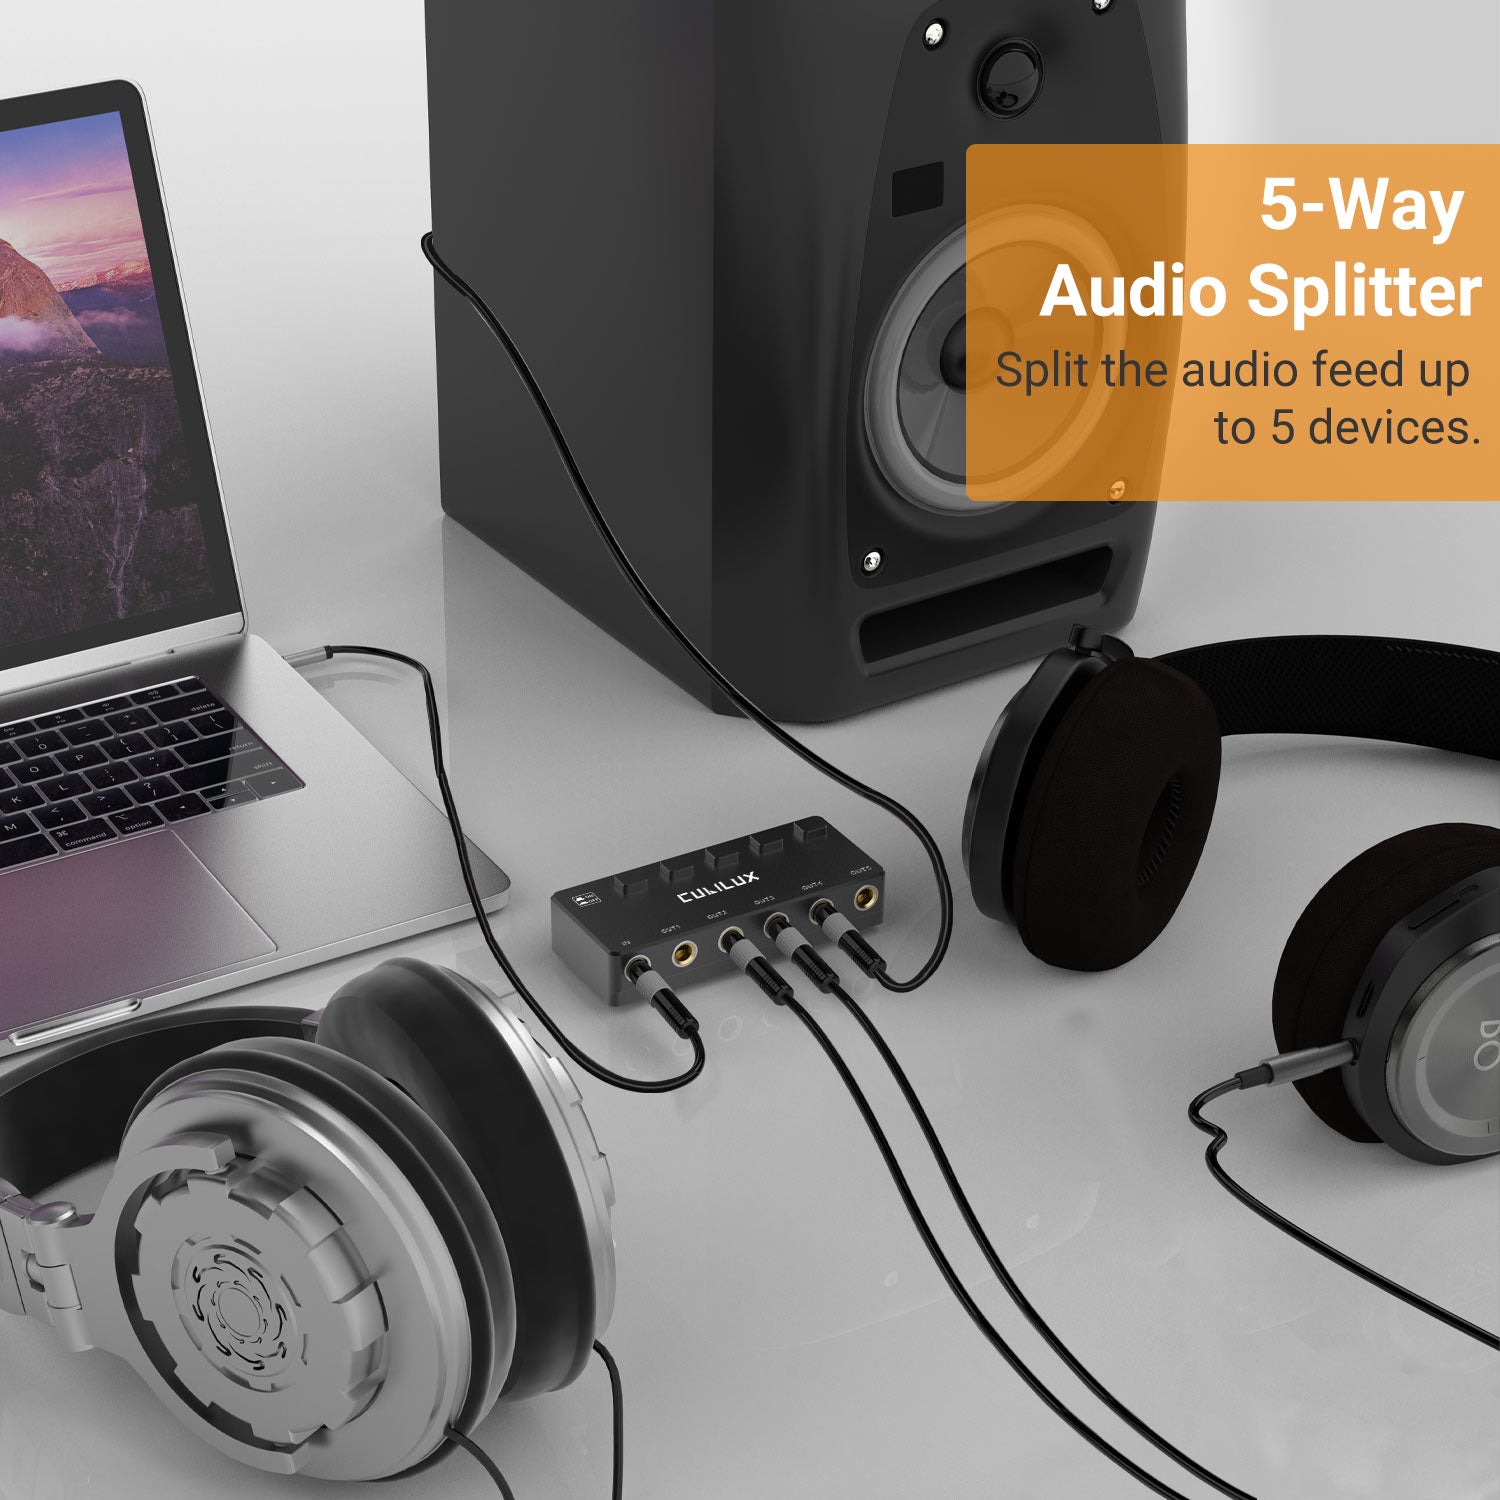 5-Way Audio Splitter